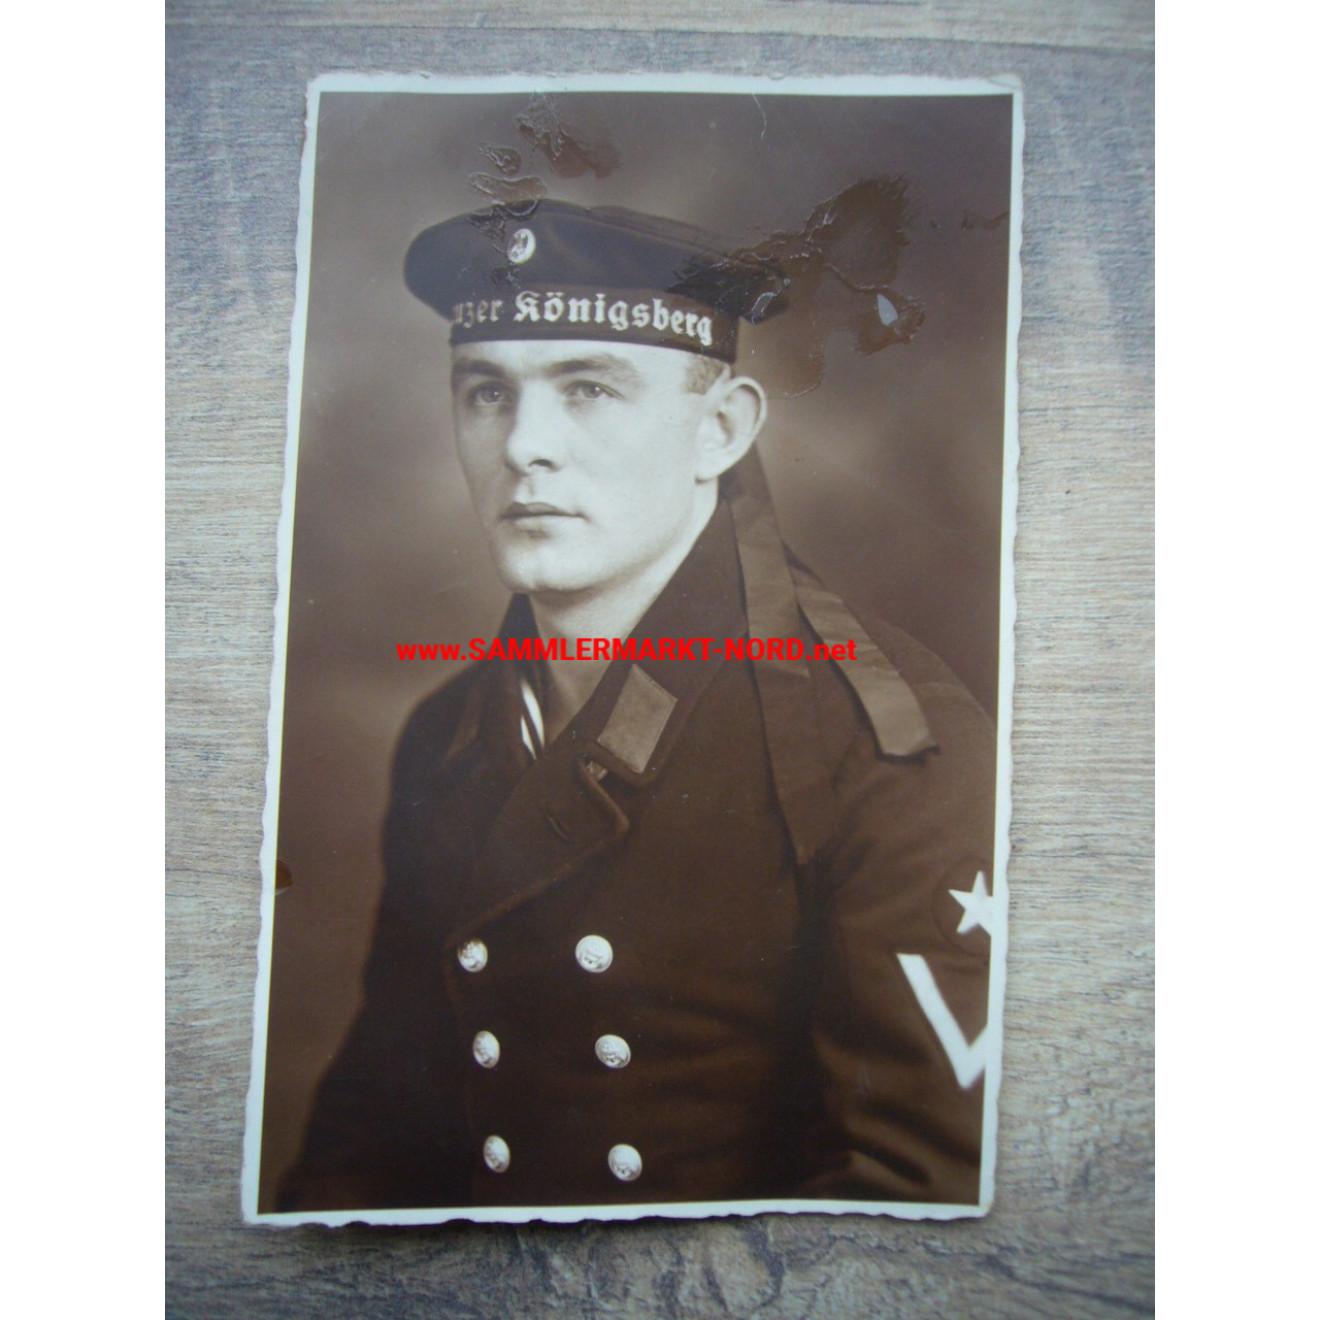 Reichsmarine - Sailor of the cruiser Königsberg